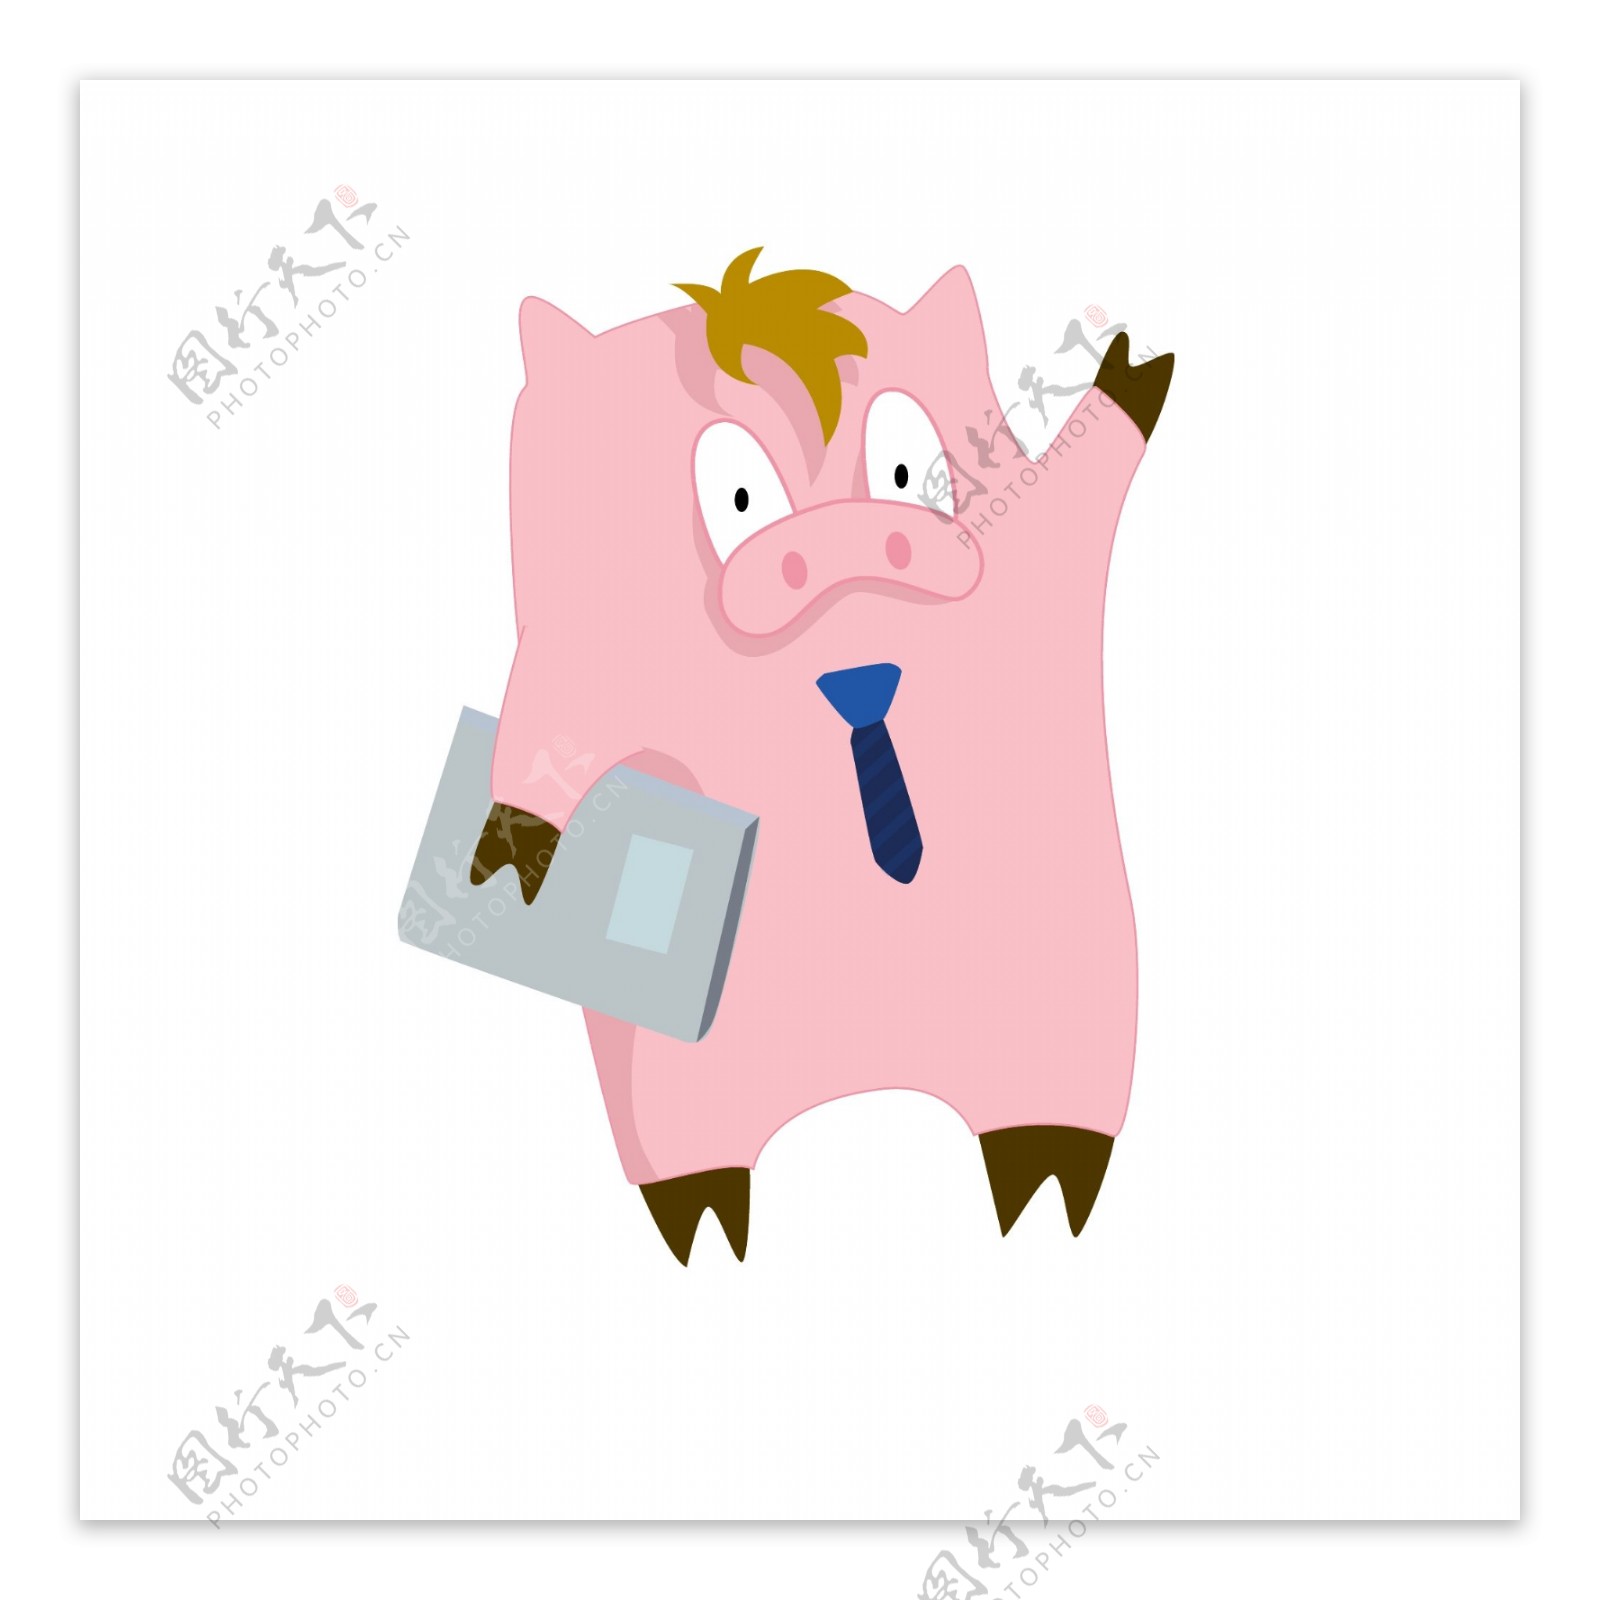 简约猪年卡通猪形象表情包可爱猪元素工作